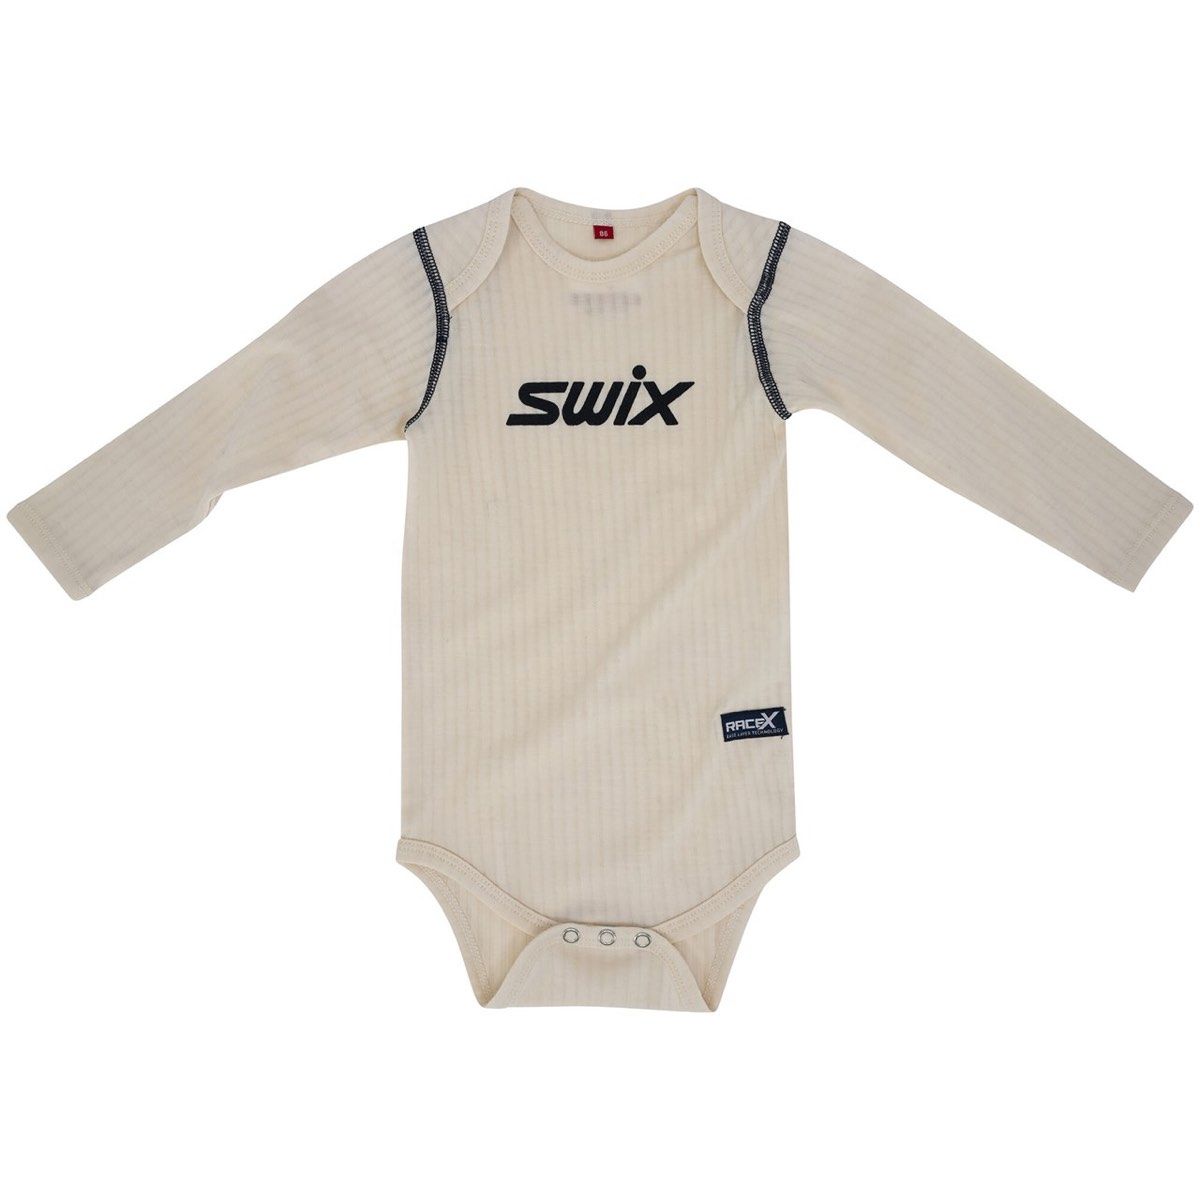 Swix Racex Merino Baby Body Snow White/ Dark Navy